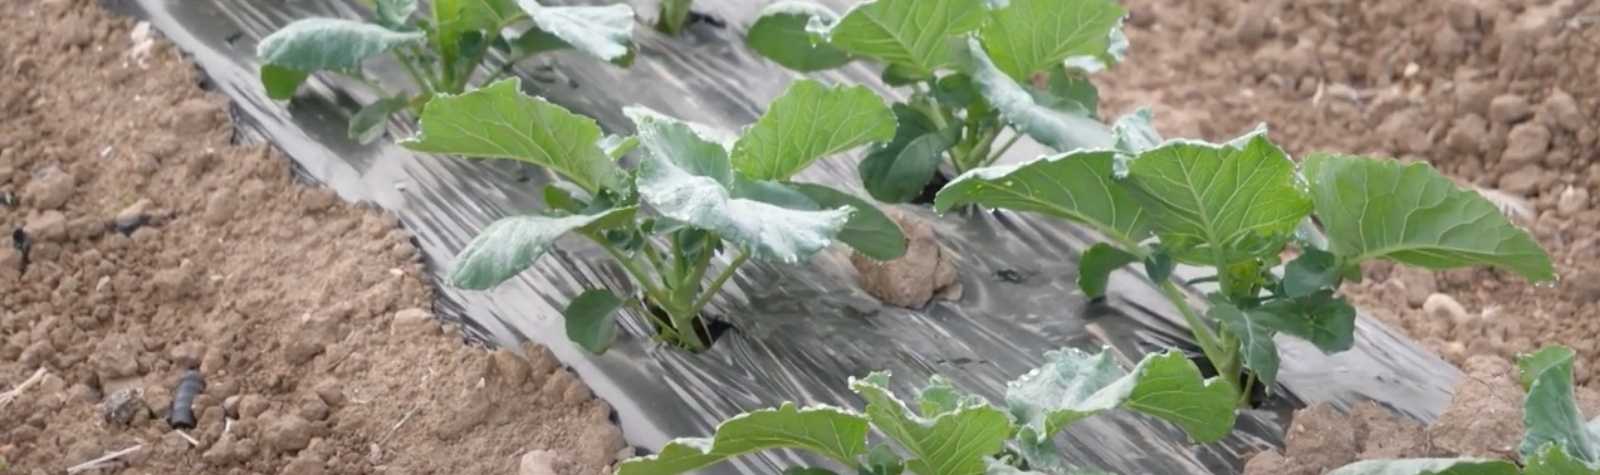 Acolchados biodegradables para la sostenibilidad en el campo murciano